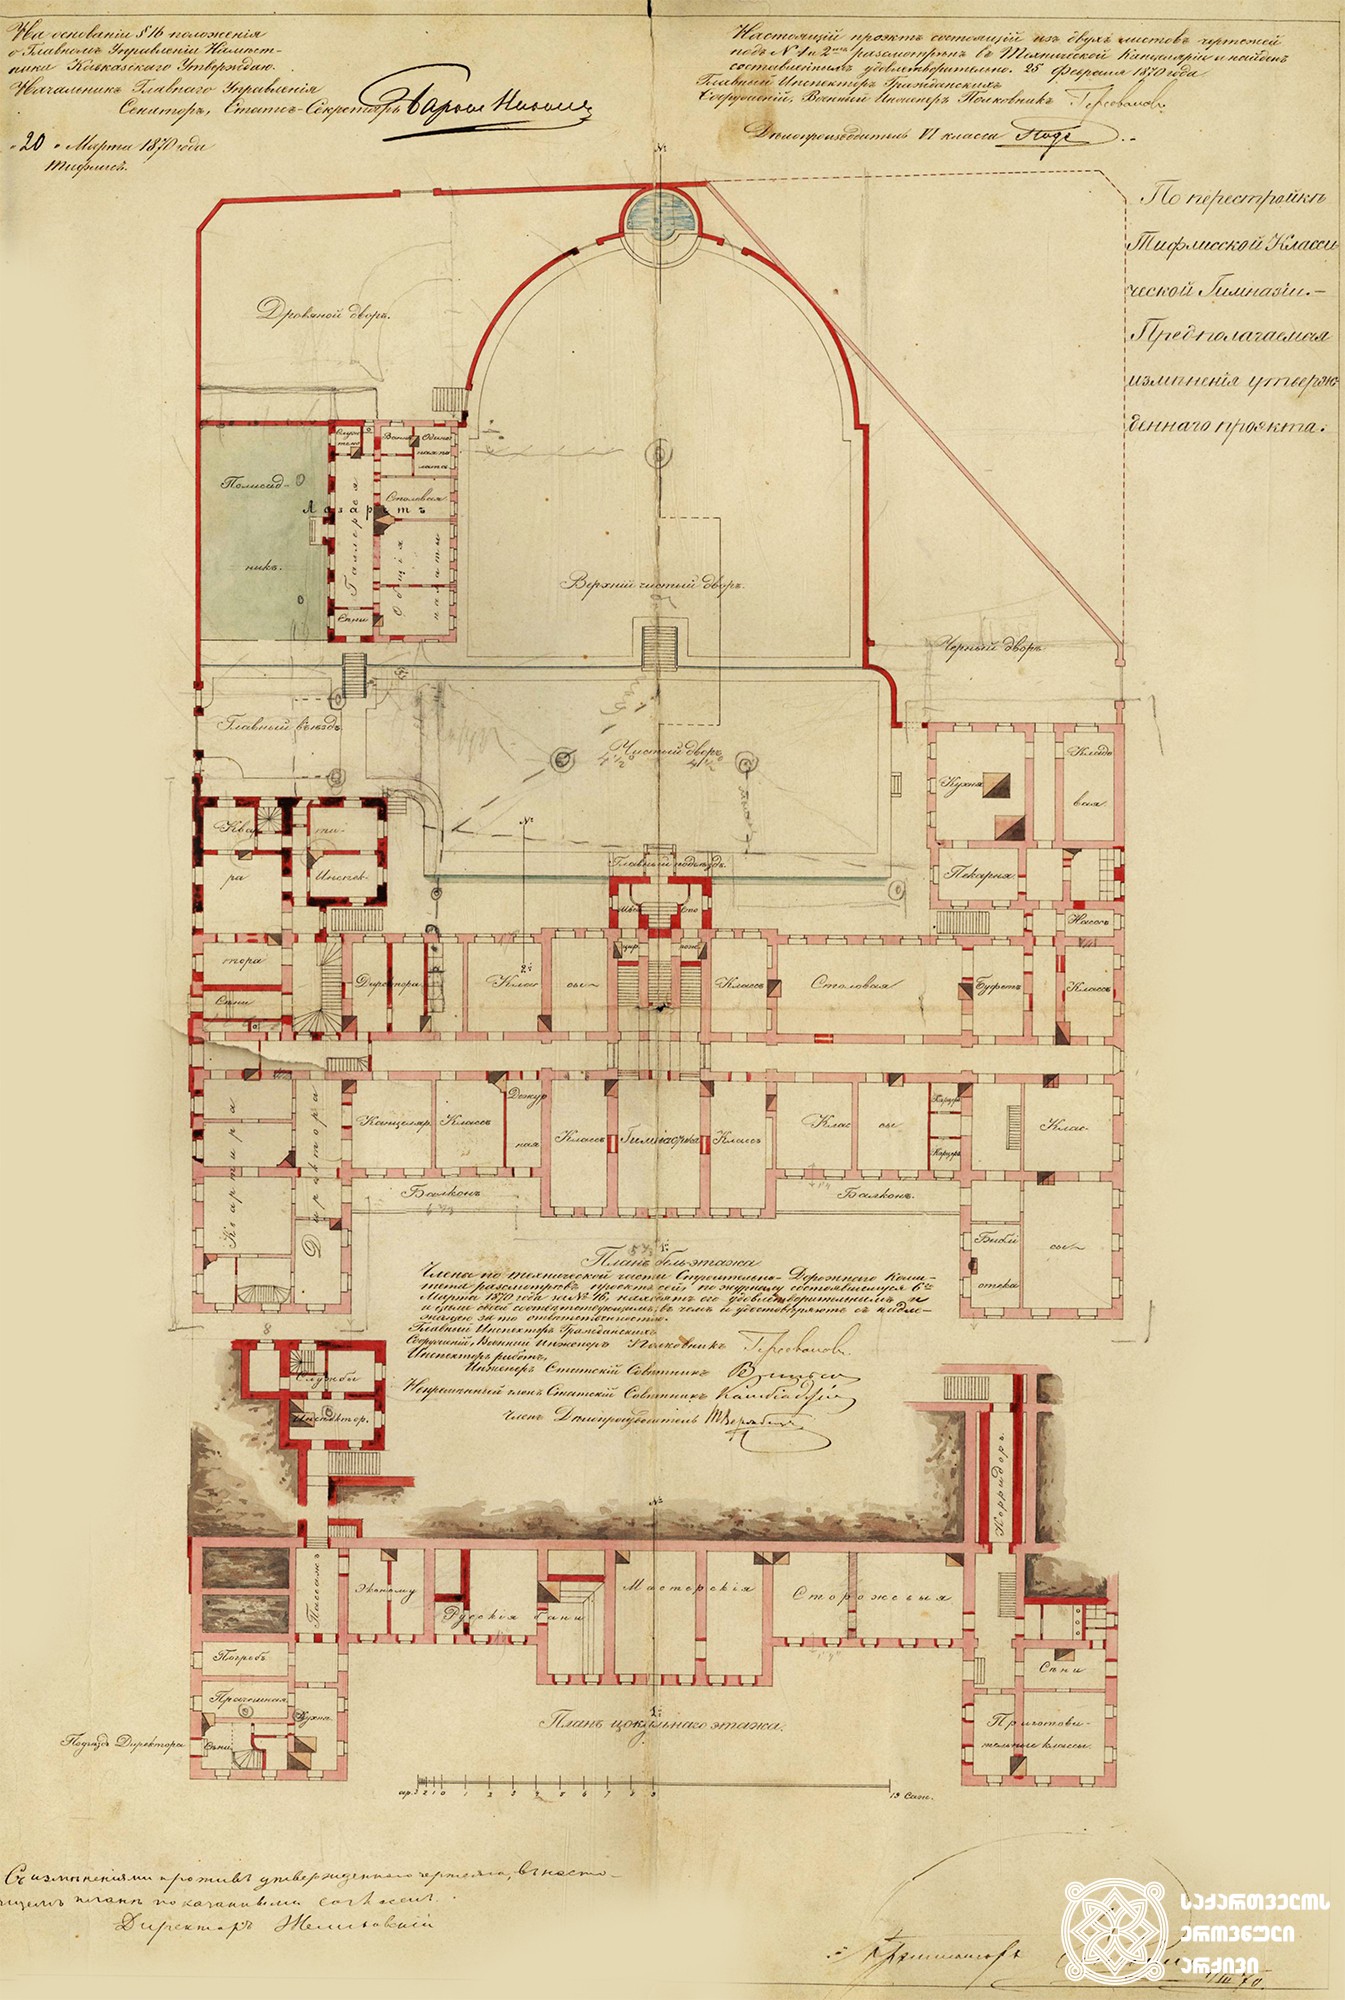 თბილისის კლასიკური გიმნაზიის შენობის სართულების გეგმები, გადაკეთების პროექტი. <br>
არქიტექტორი ოტო სიმონსონი. <br>
თბილისი, 1870-1871 წლები.